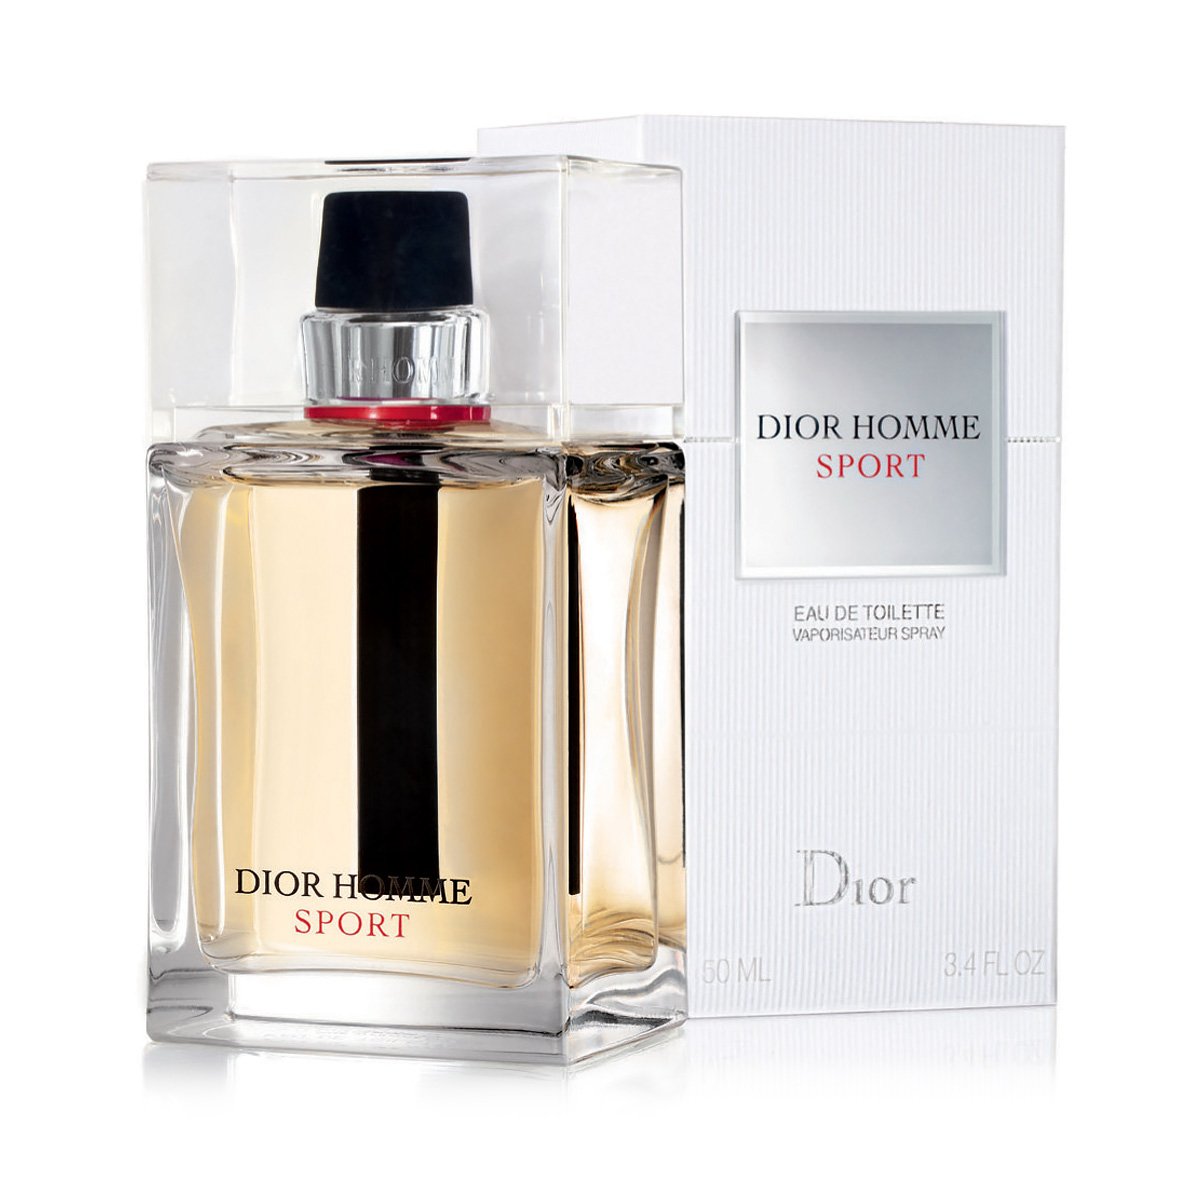 Туалетная вода home. Christian Dior Dior homme Sport 2017. Dior homme Sport 100ml. Christian Dior Dior homme Sport 100ml. Туалетная вода Christian Dior "Dior homme Sport", 100 ml.